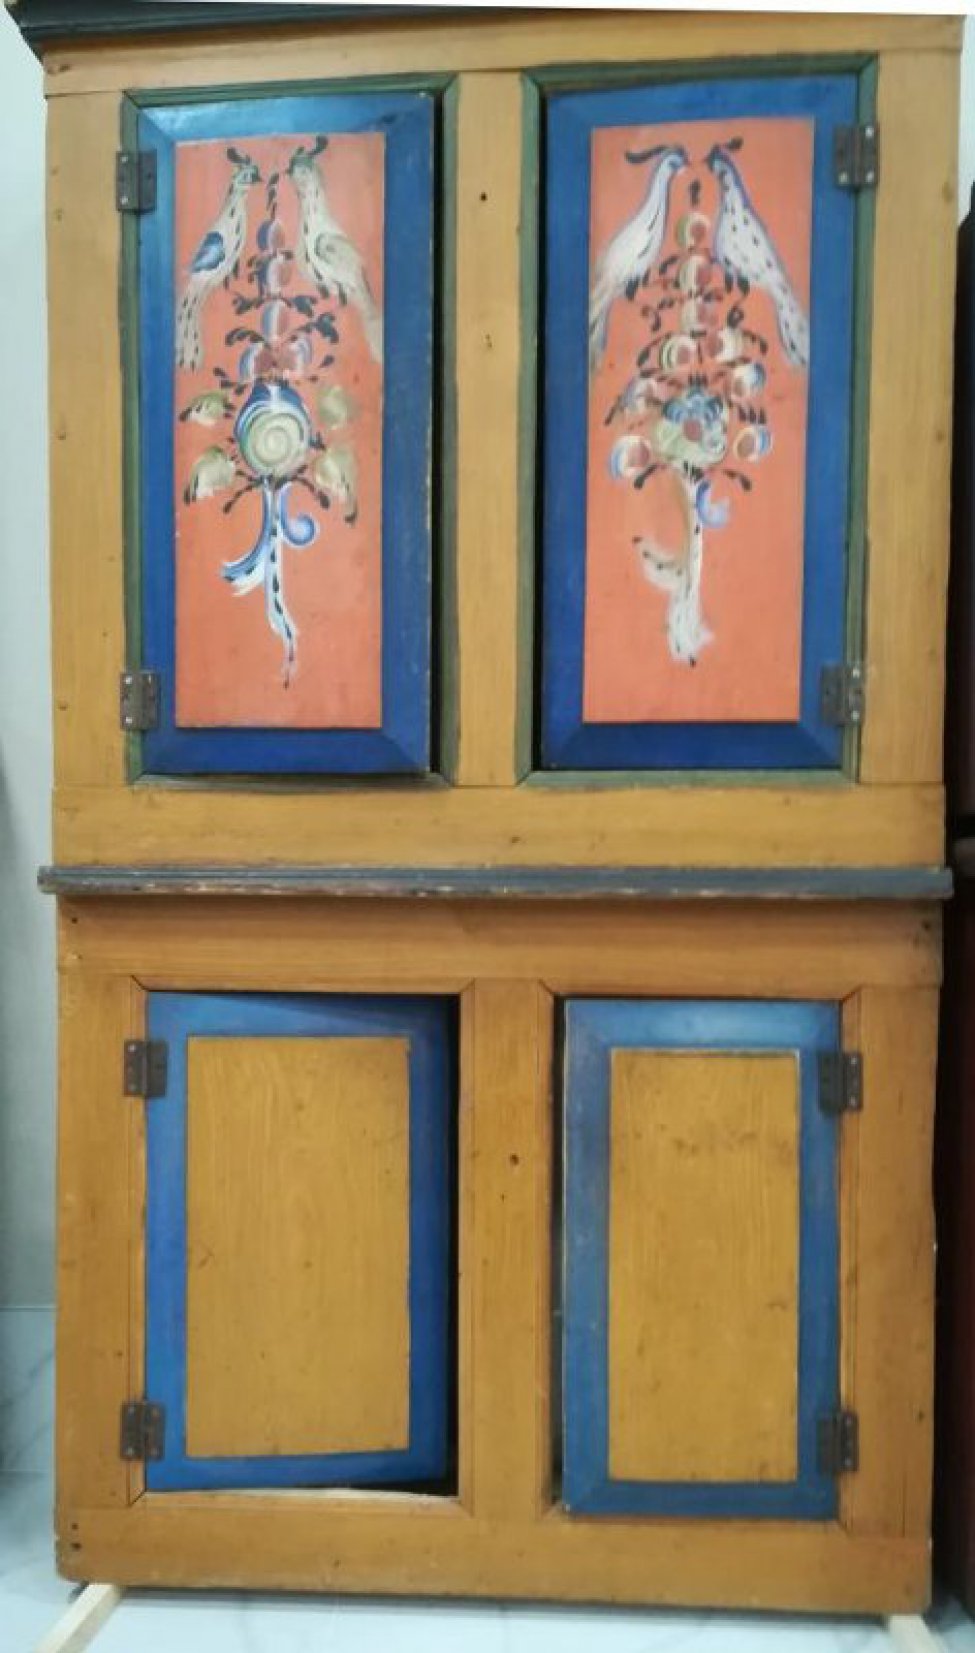 Двухсоставной, коричневый, вверху 2 дверцы расписные: на красном фоне на цветах 2 птицы, обведеные синей каймой. Внизу две дверцы без росписи с синей каймой.